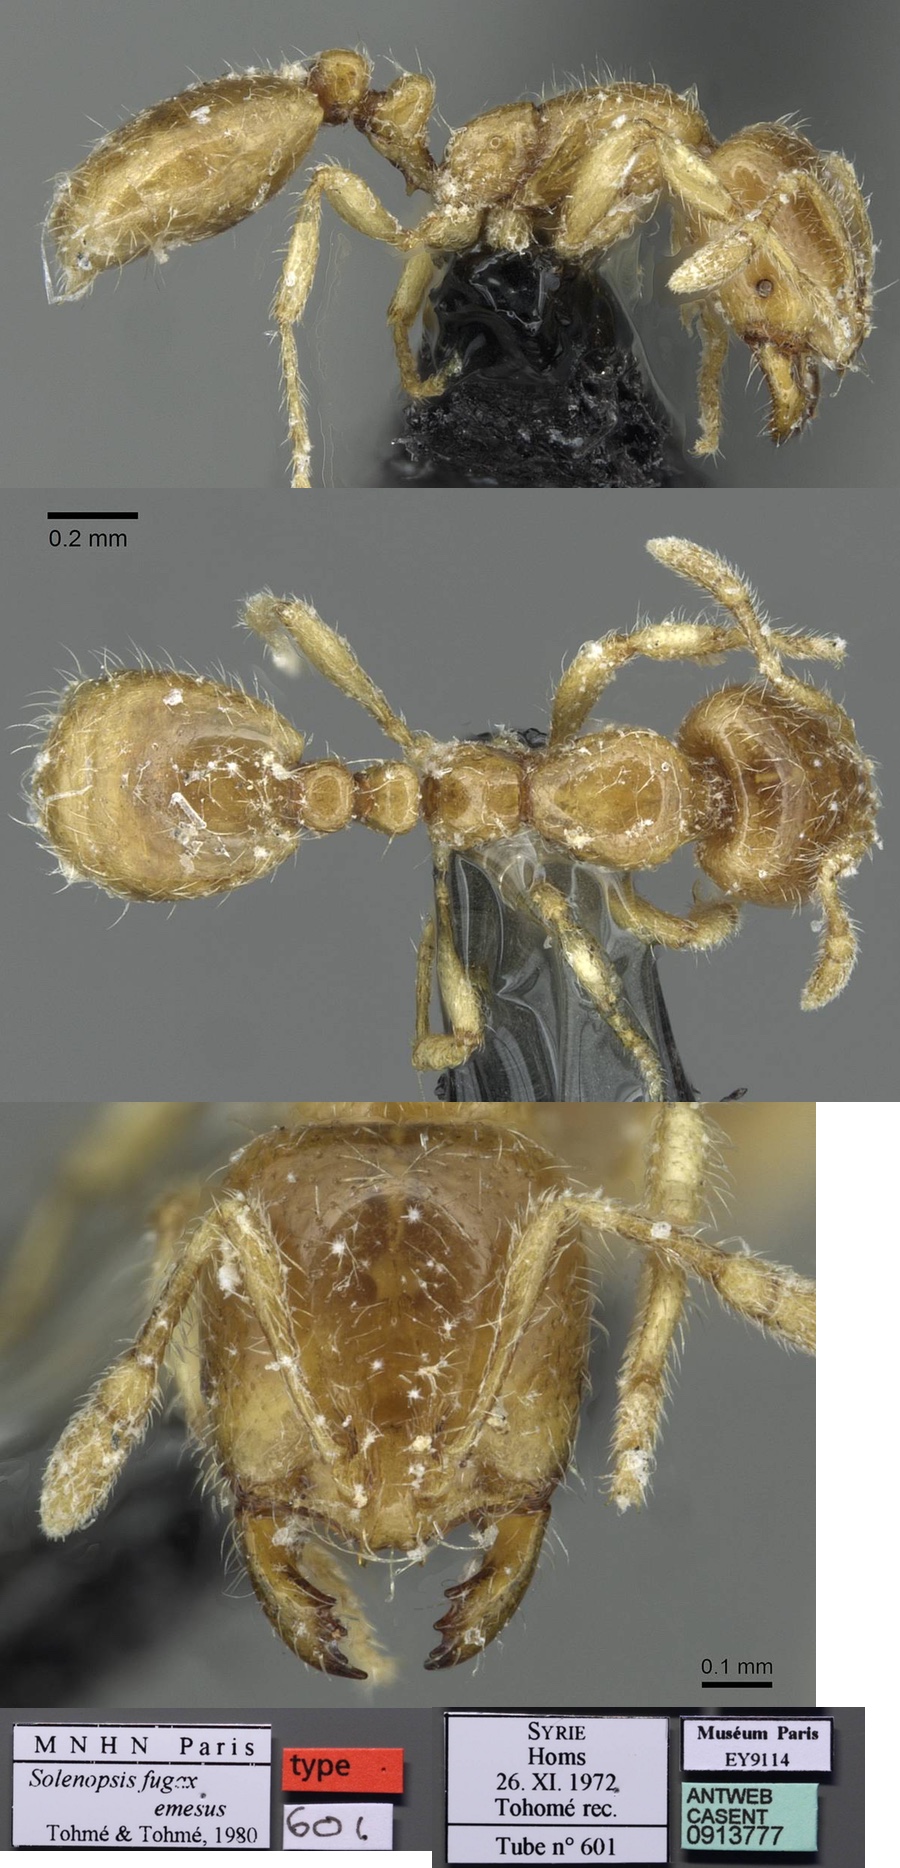 Solenopsis fugax emesus